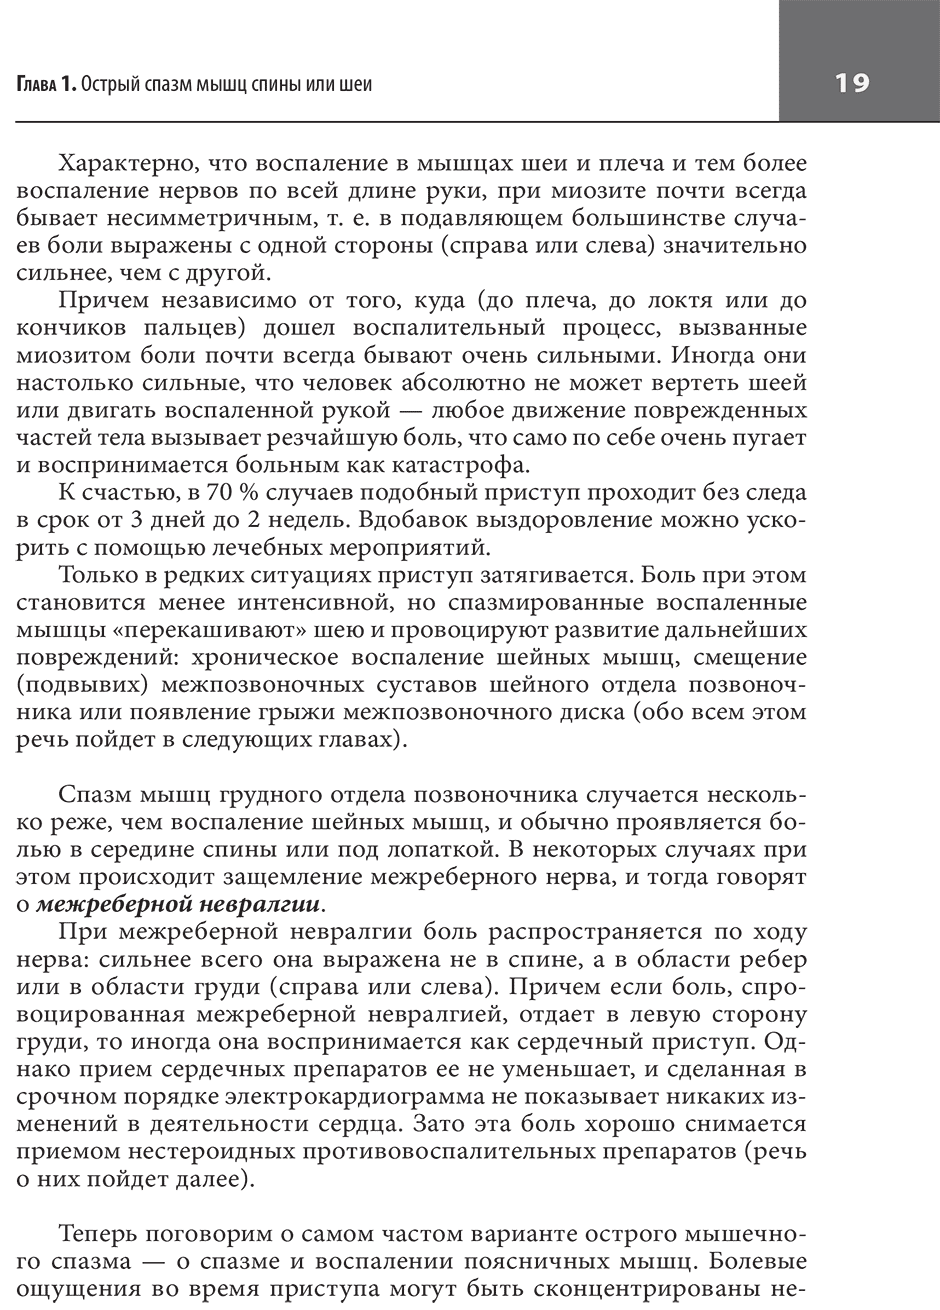 Пример страницы из книги "Большая книга здоровья доктора Евдокименко" - П. В. Евдокименко